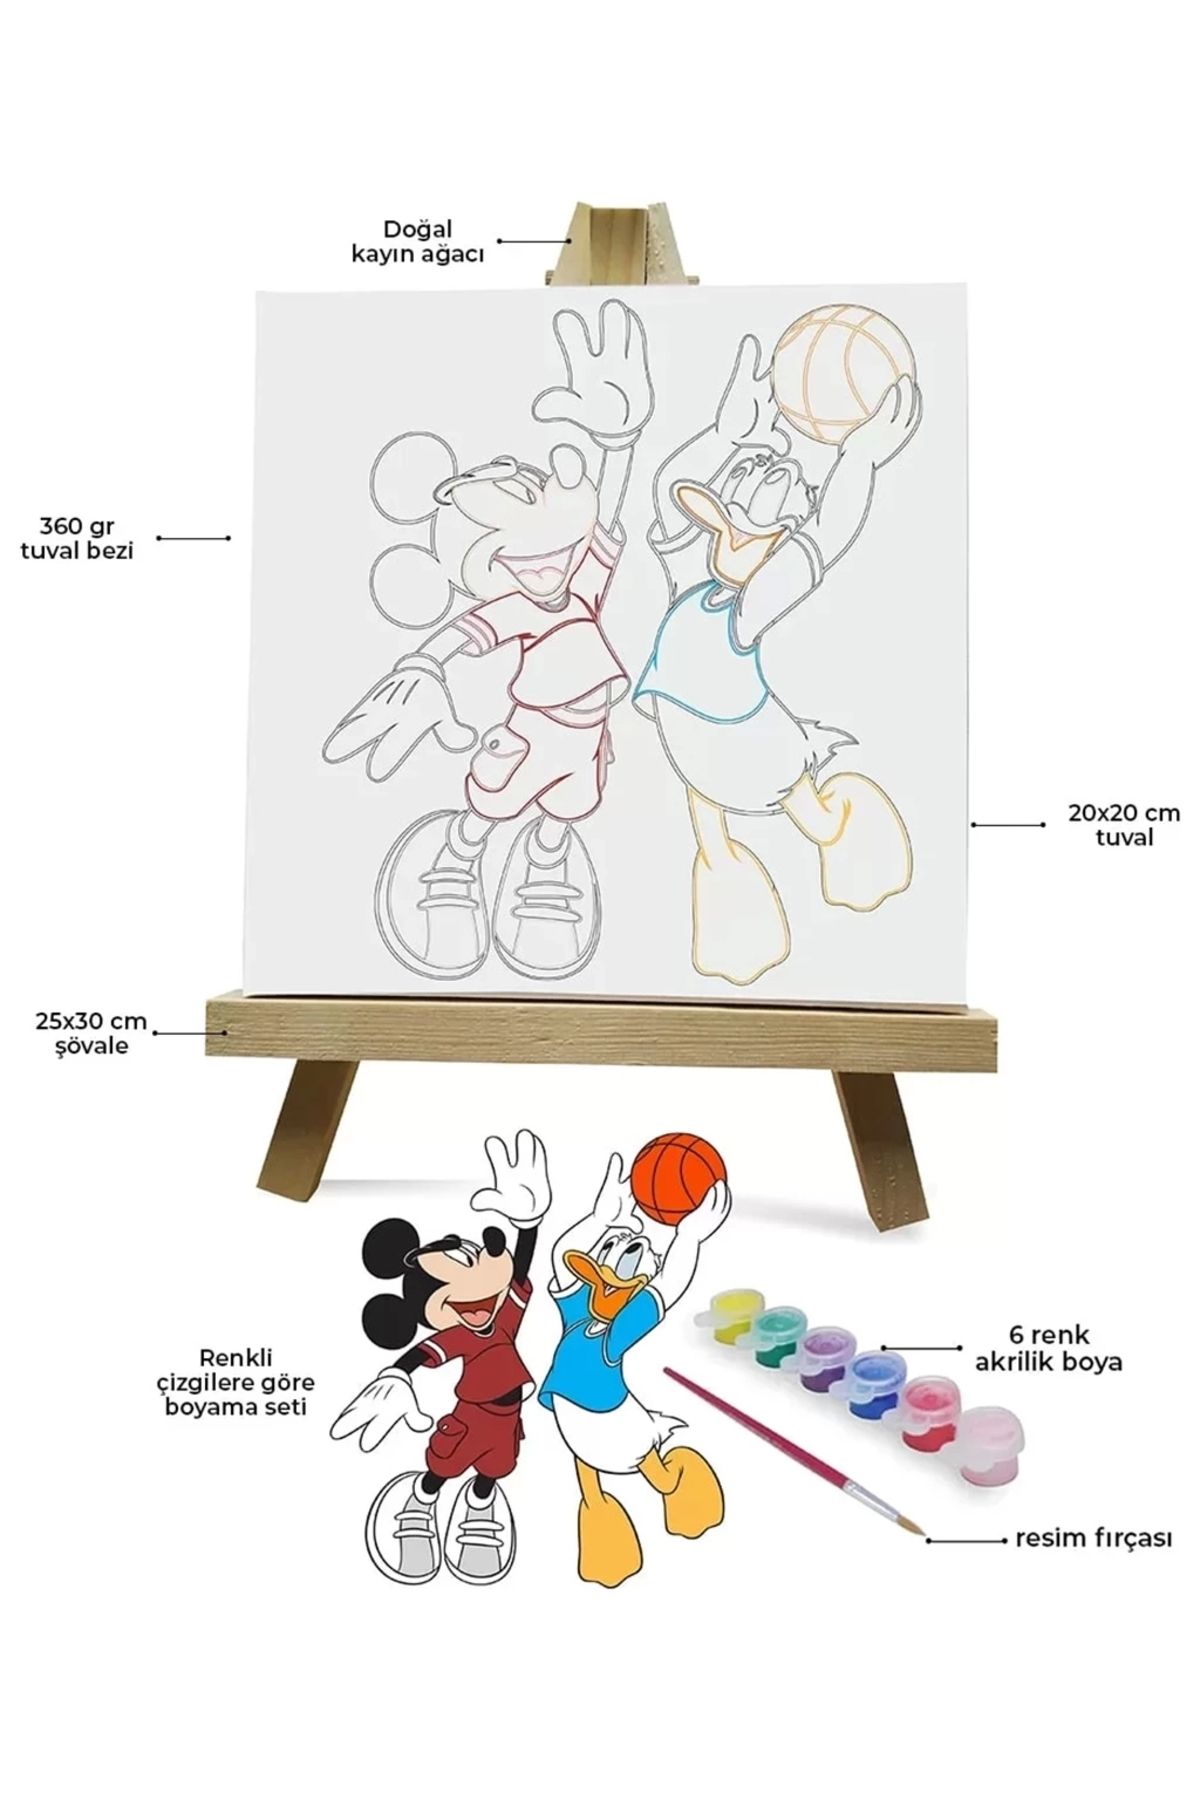 Tabdiko Renklerle Çocuk Boyama Hobi Setleri 20 X 20 Cm Tuvale Şasesine Gerili Mickey Mouse Ve Donald Duck